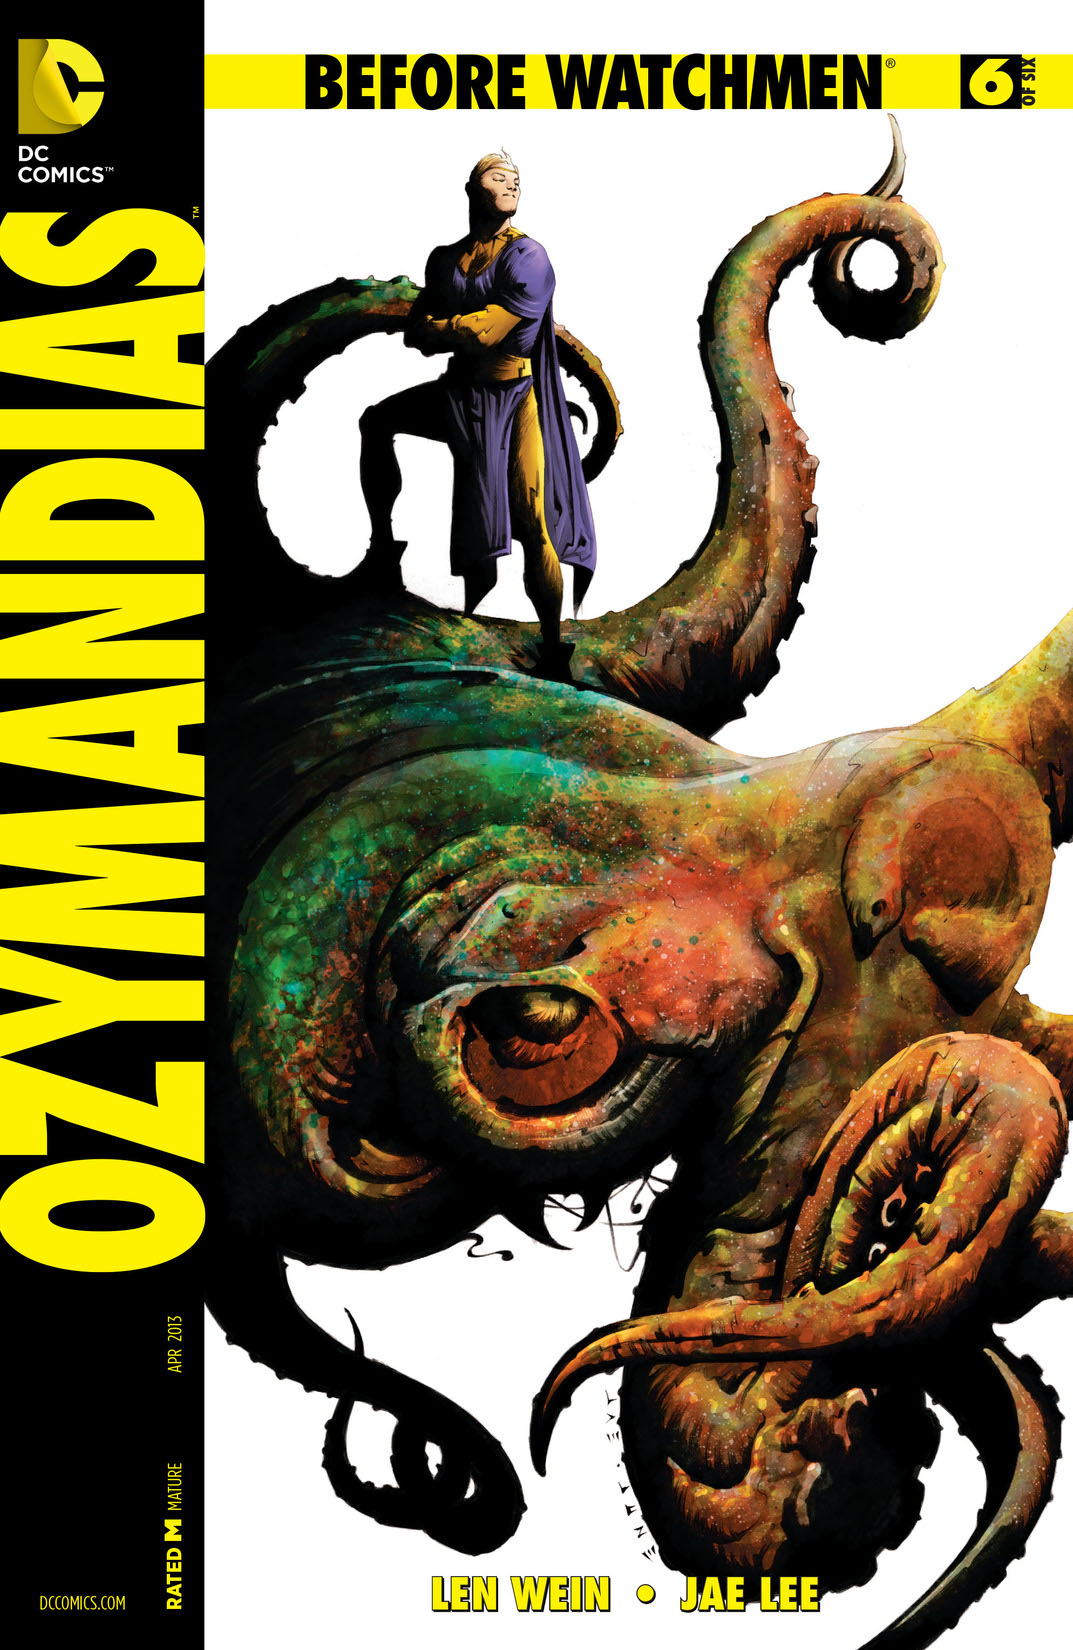 Before Watchmen: Ozymandias #6 preview images